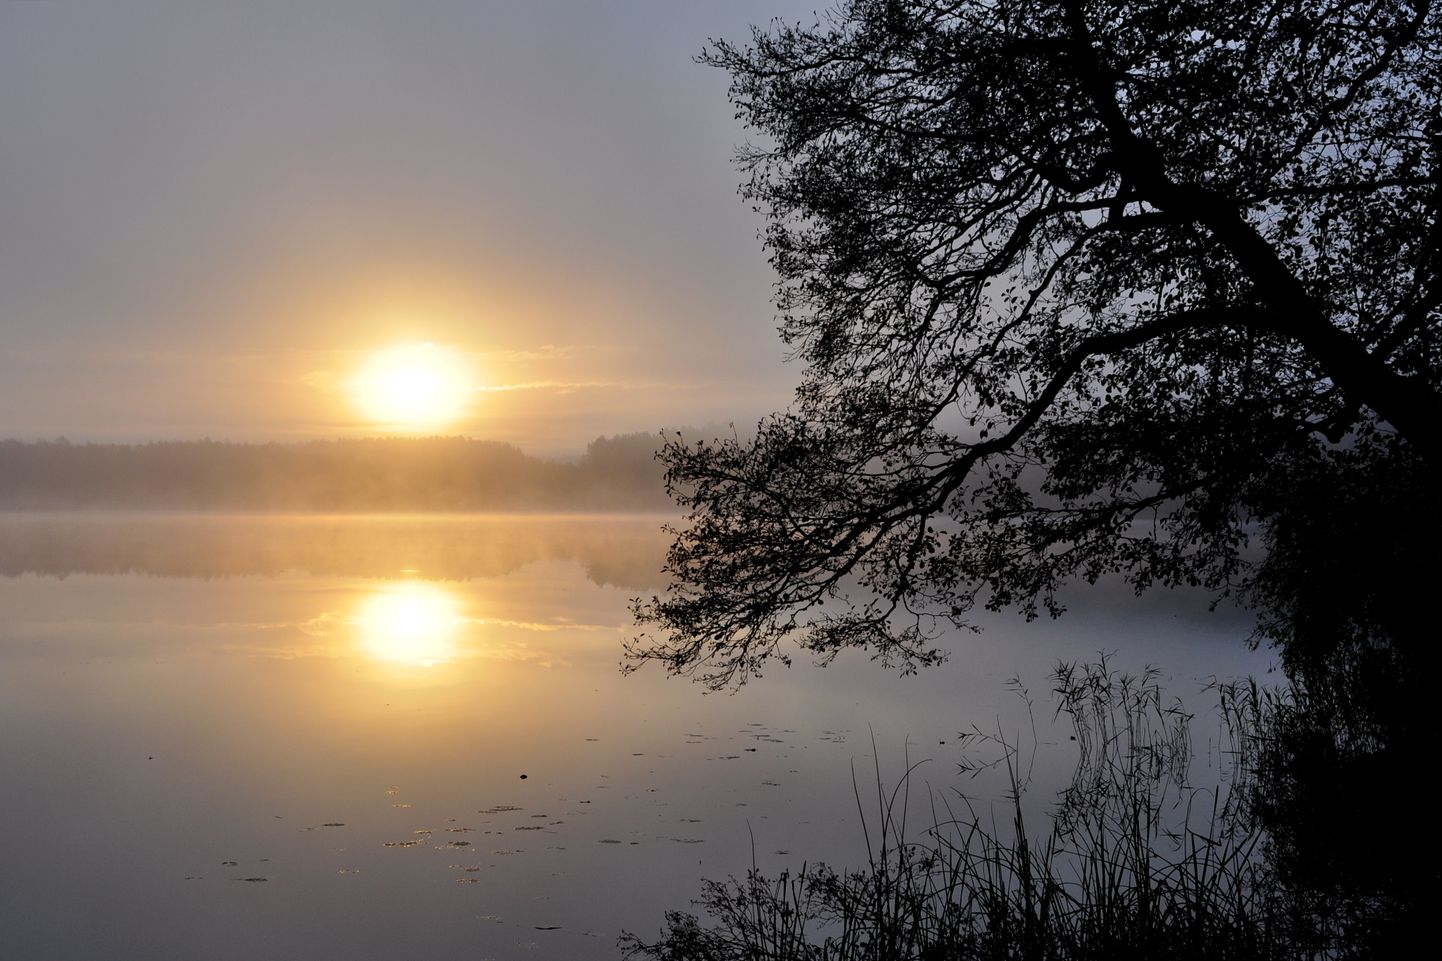 Rītausma Augštaitijas nacionālajā parkā Lietuvā.